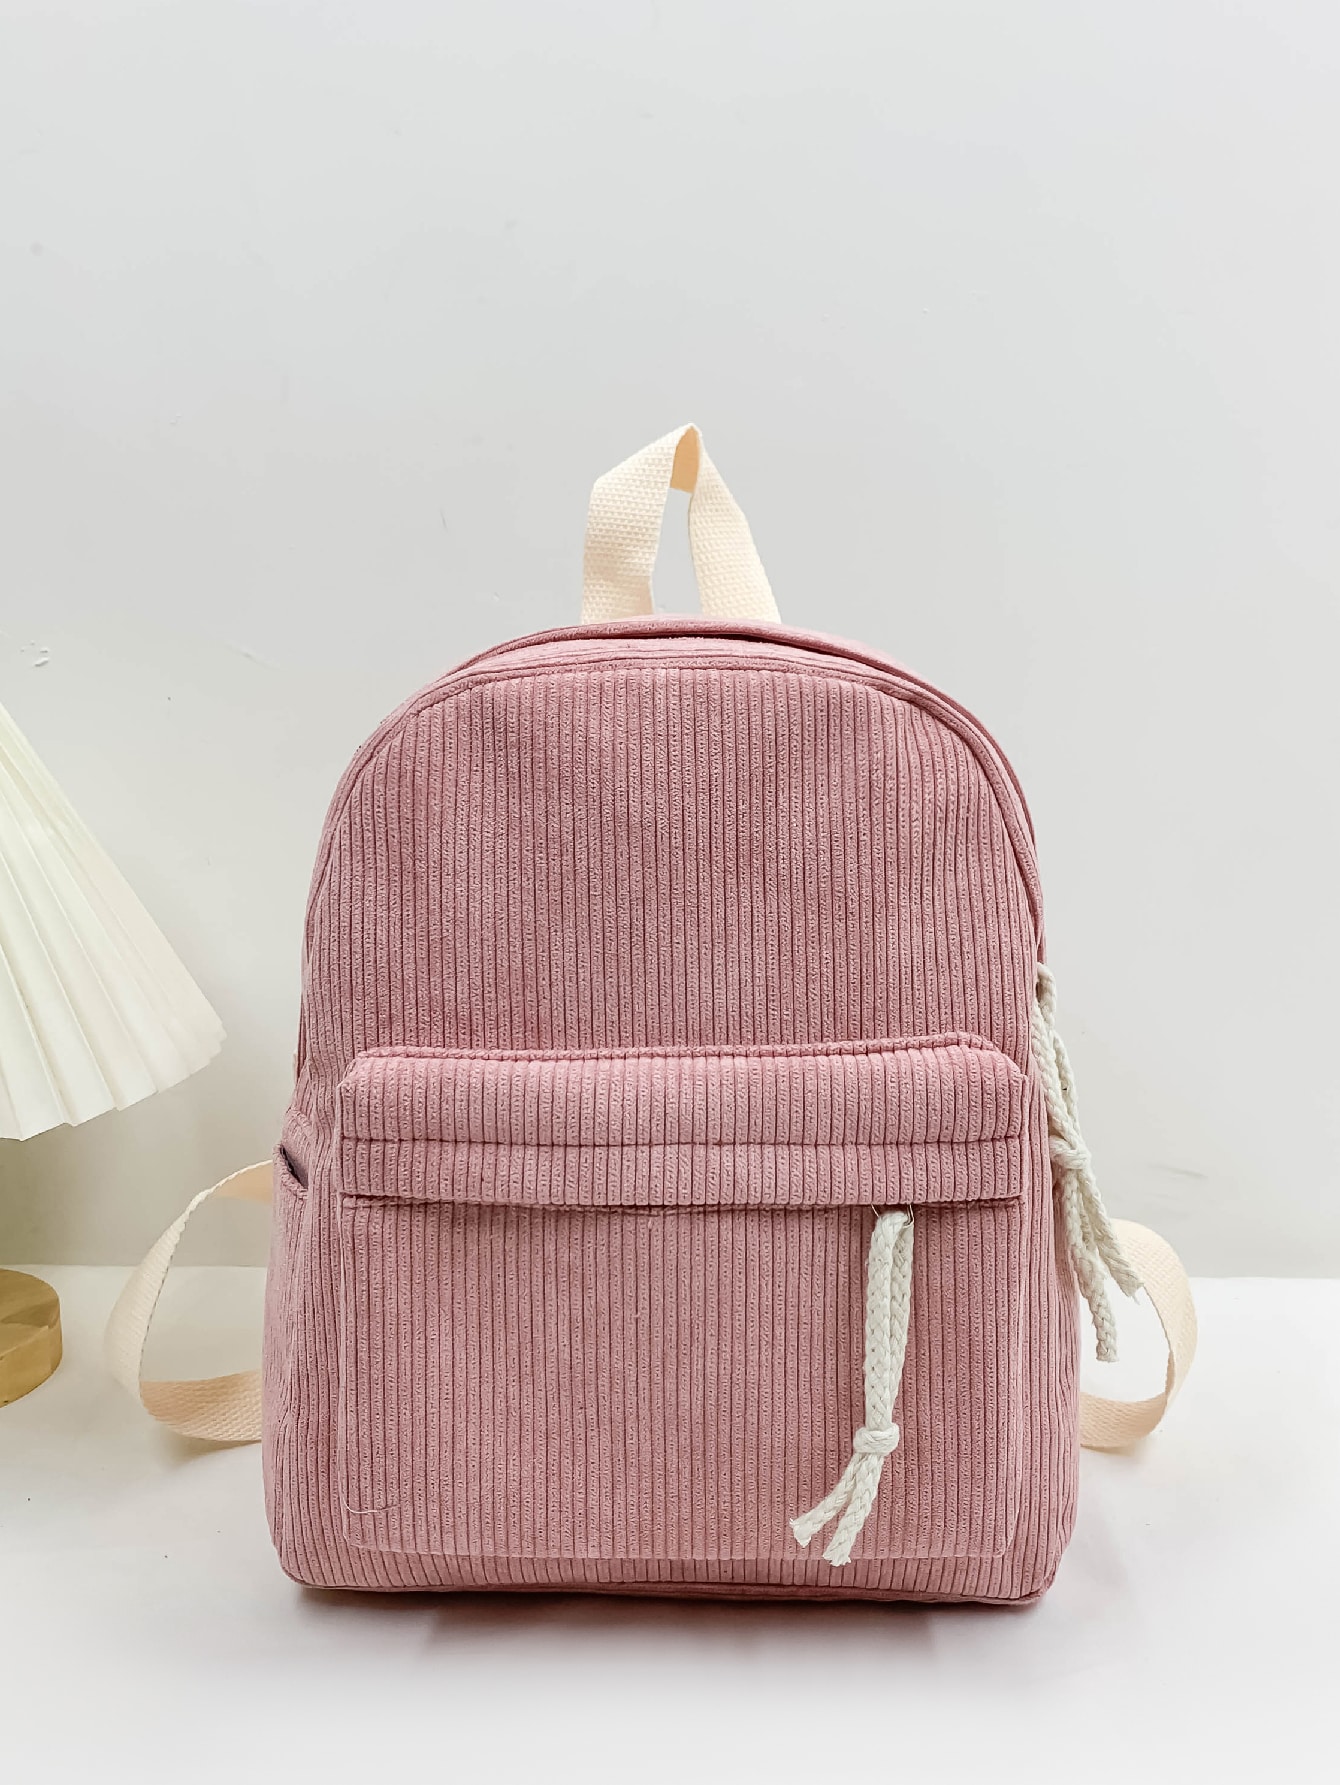 Классический рюкзак с графическим рисунком вельвета, розовый женский вельветовый рюкзак вместительный рюкзак дорожный рюкзак для книг школьный рюкзак для девочек подростков